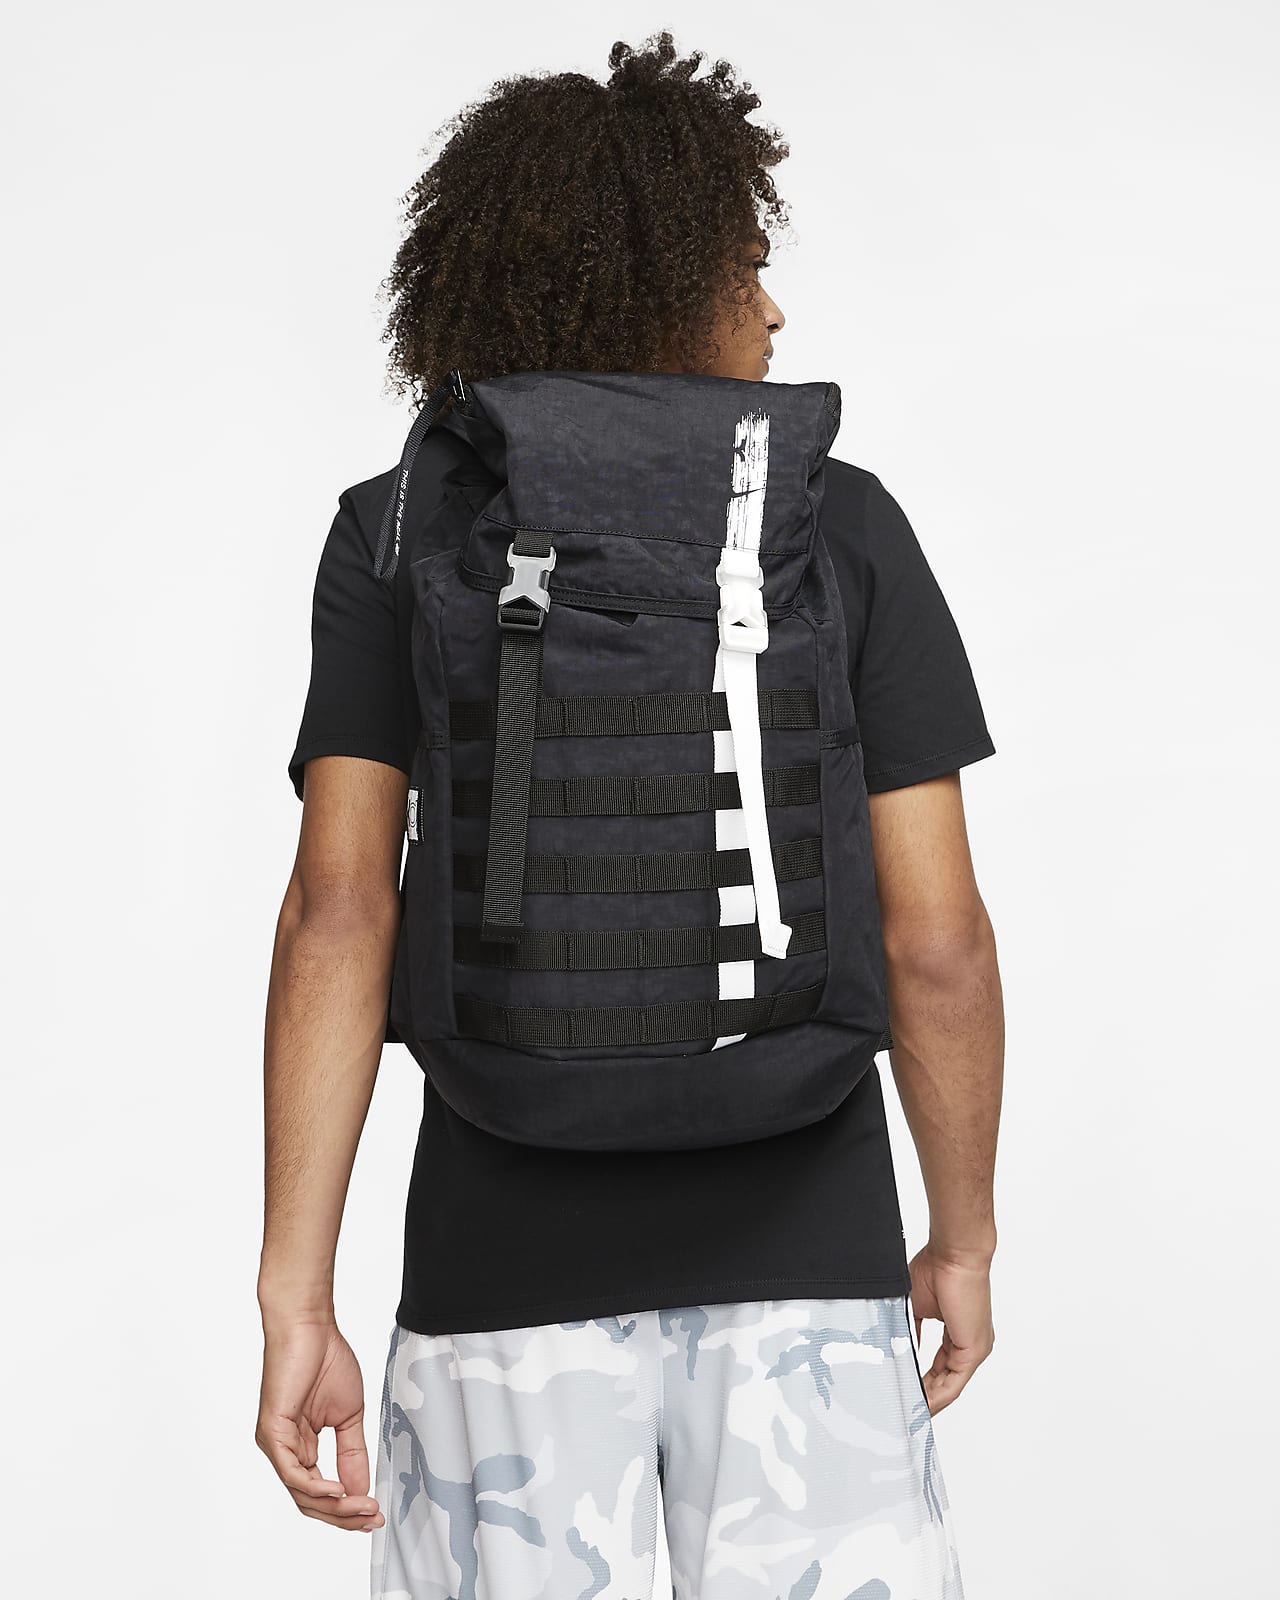 kd backpack for girls